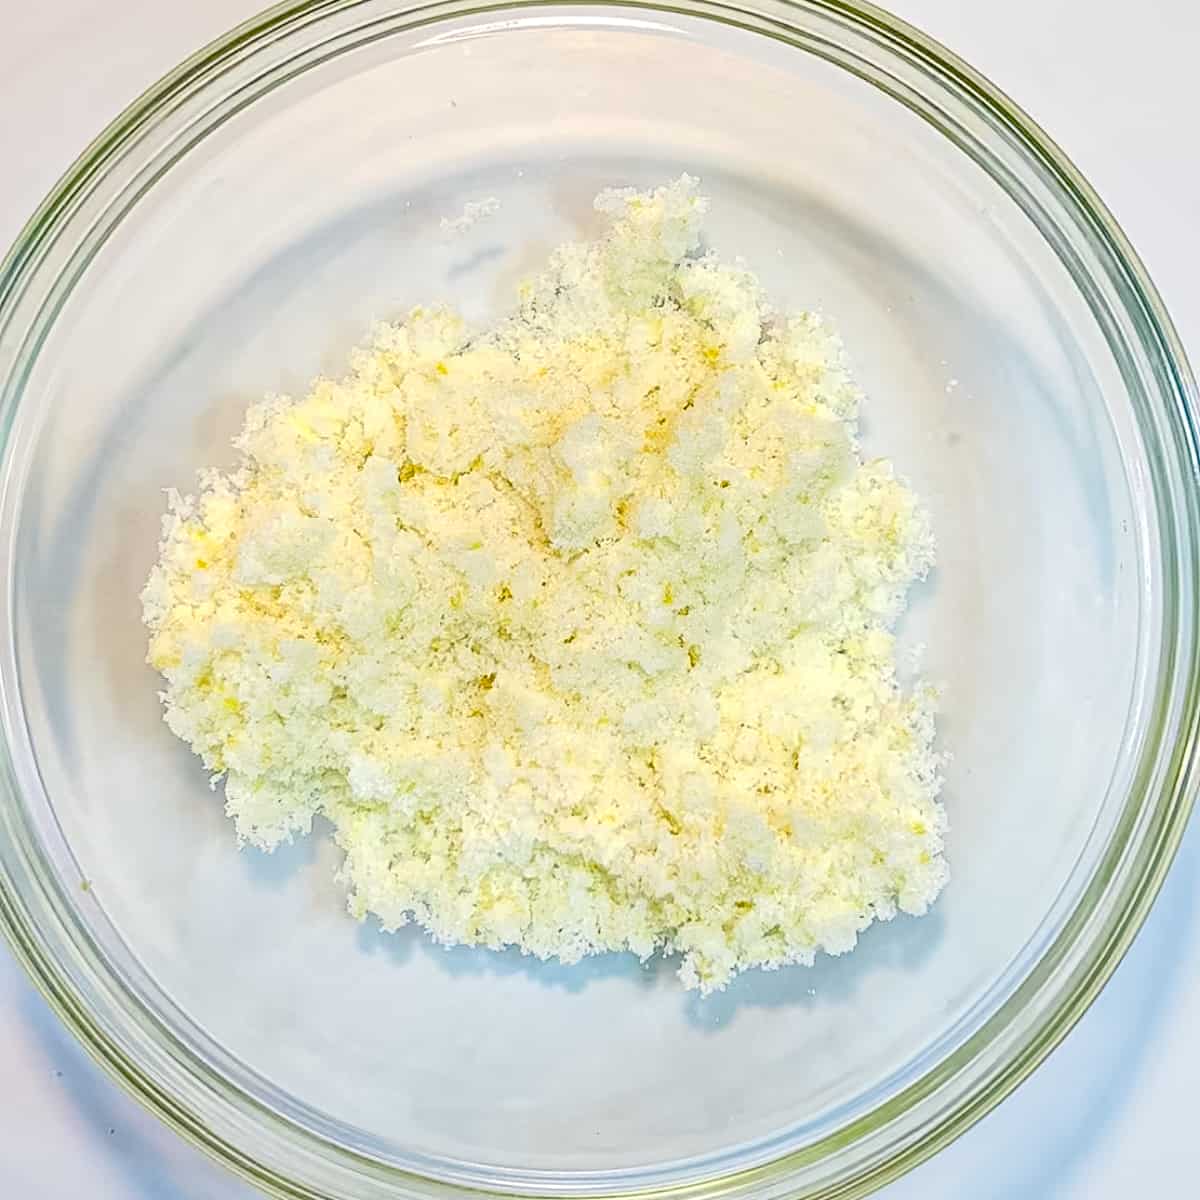 lemon sugar in a bowl.